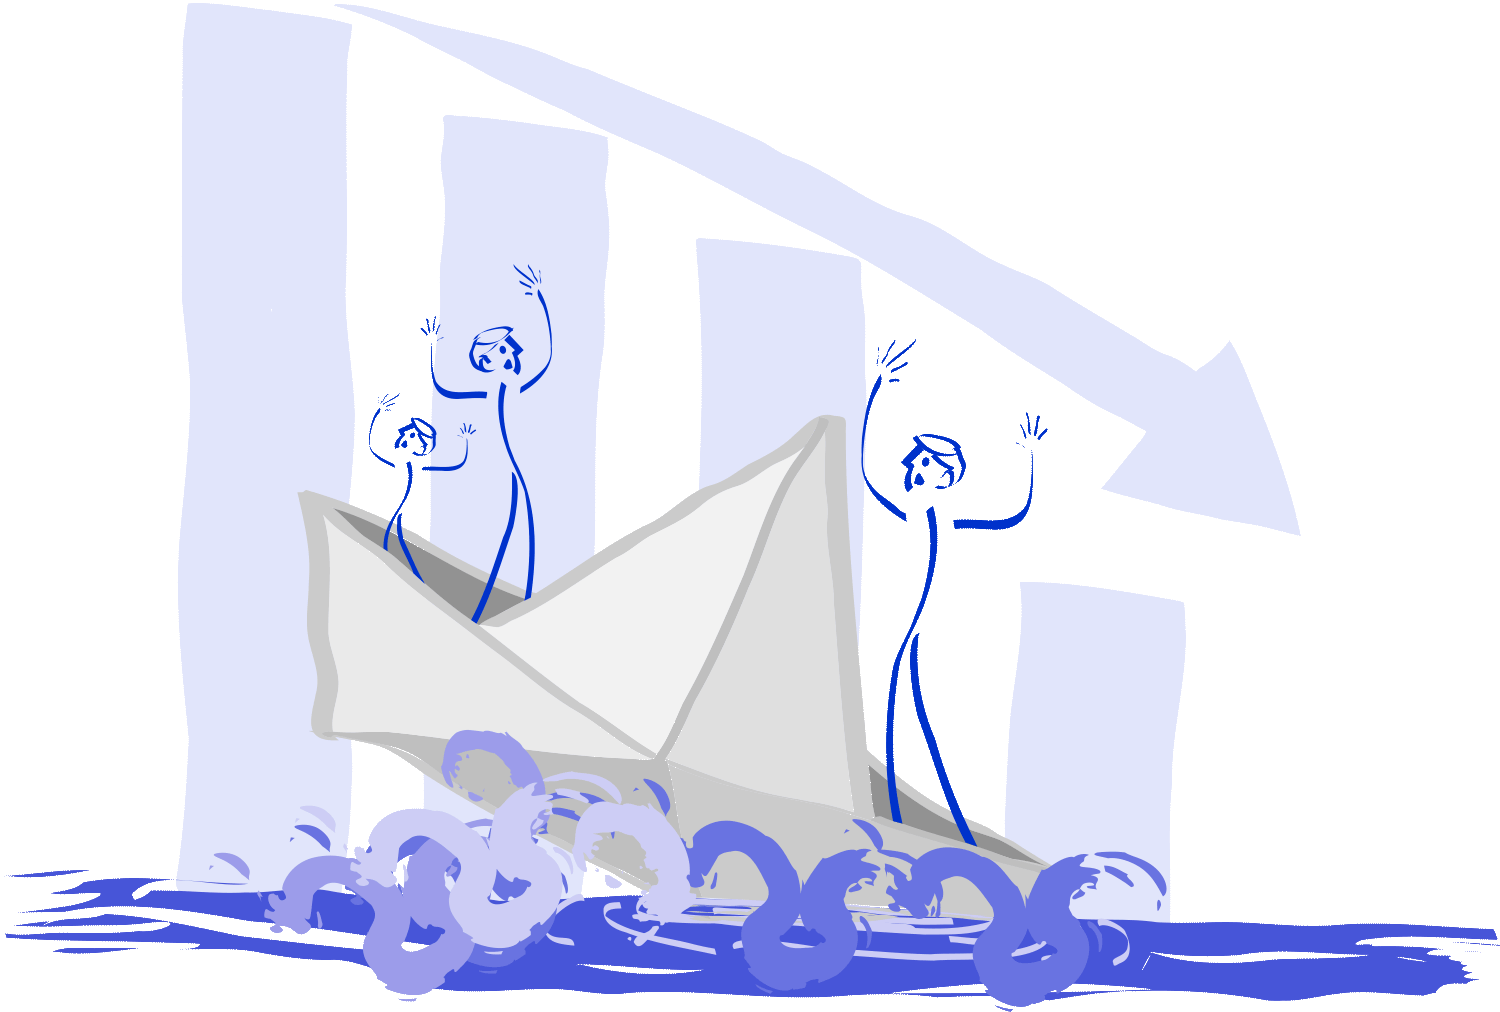 L'illustration dépeint le déclin d'une entreprise, symbolisée par un bateau en papier qui coule, tandis qu'une flèche en chute exponentielle à l'arrière-plan indique la baisse marquée. Illustration par Nêio Mustafa.